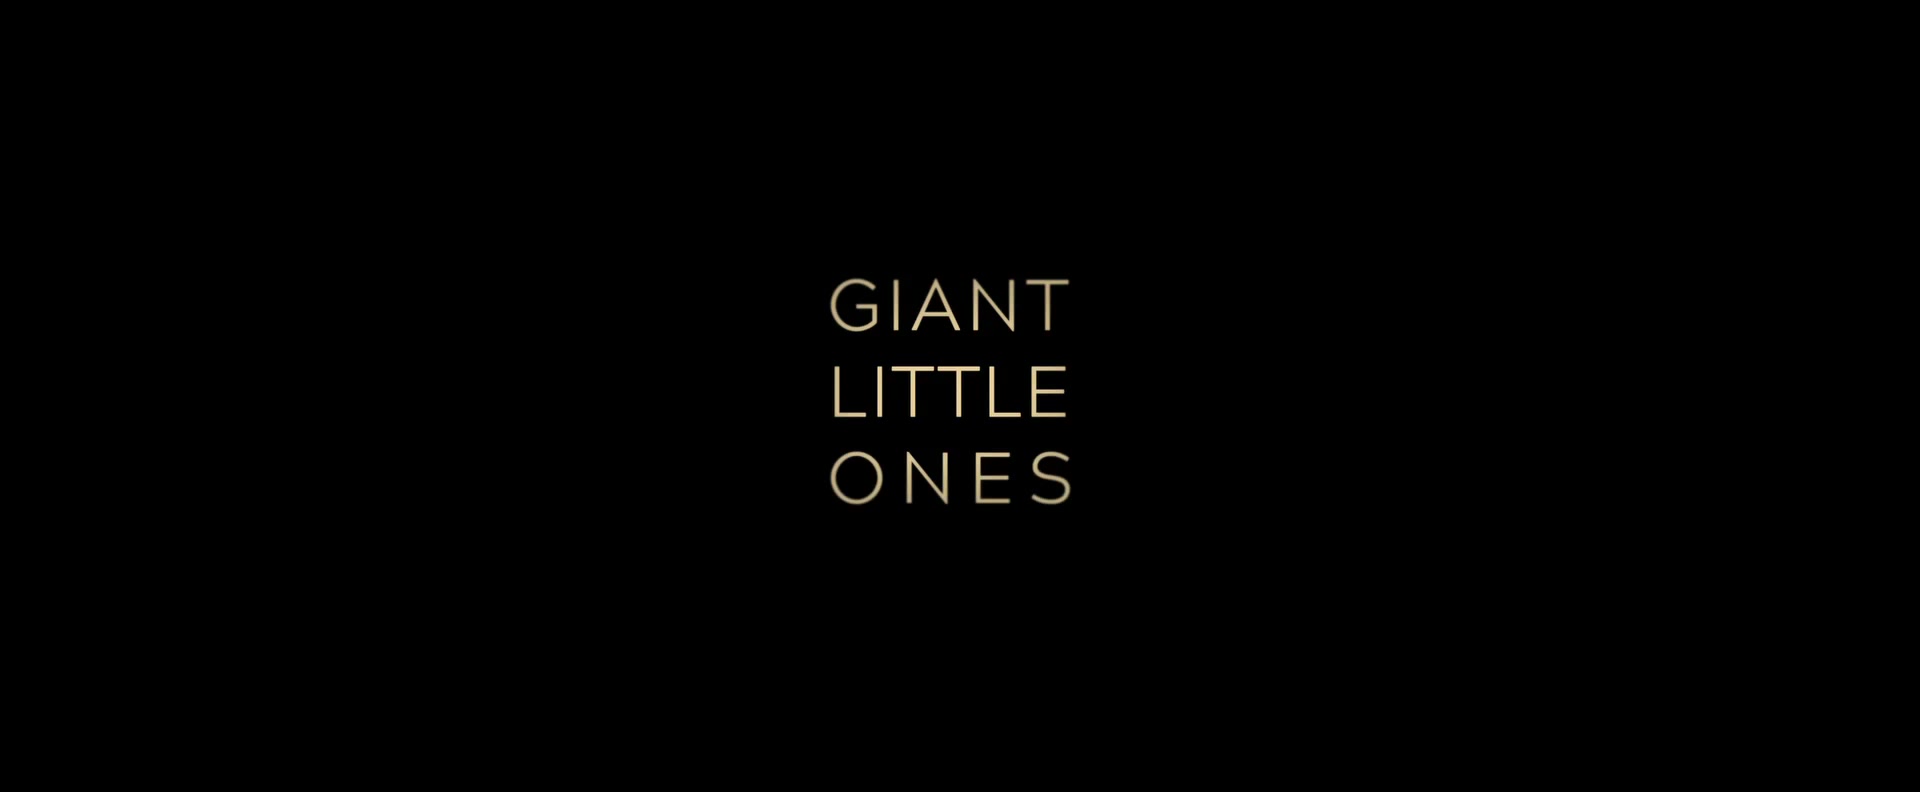 Giant_Little_Ones_2018_0126.jpg